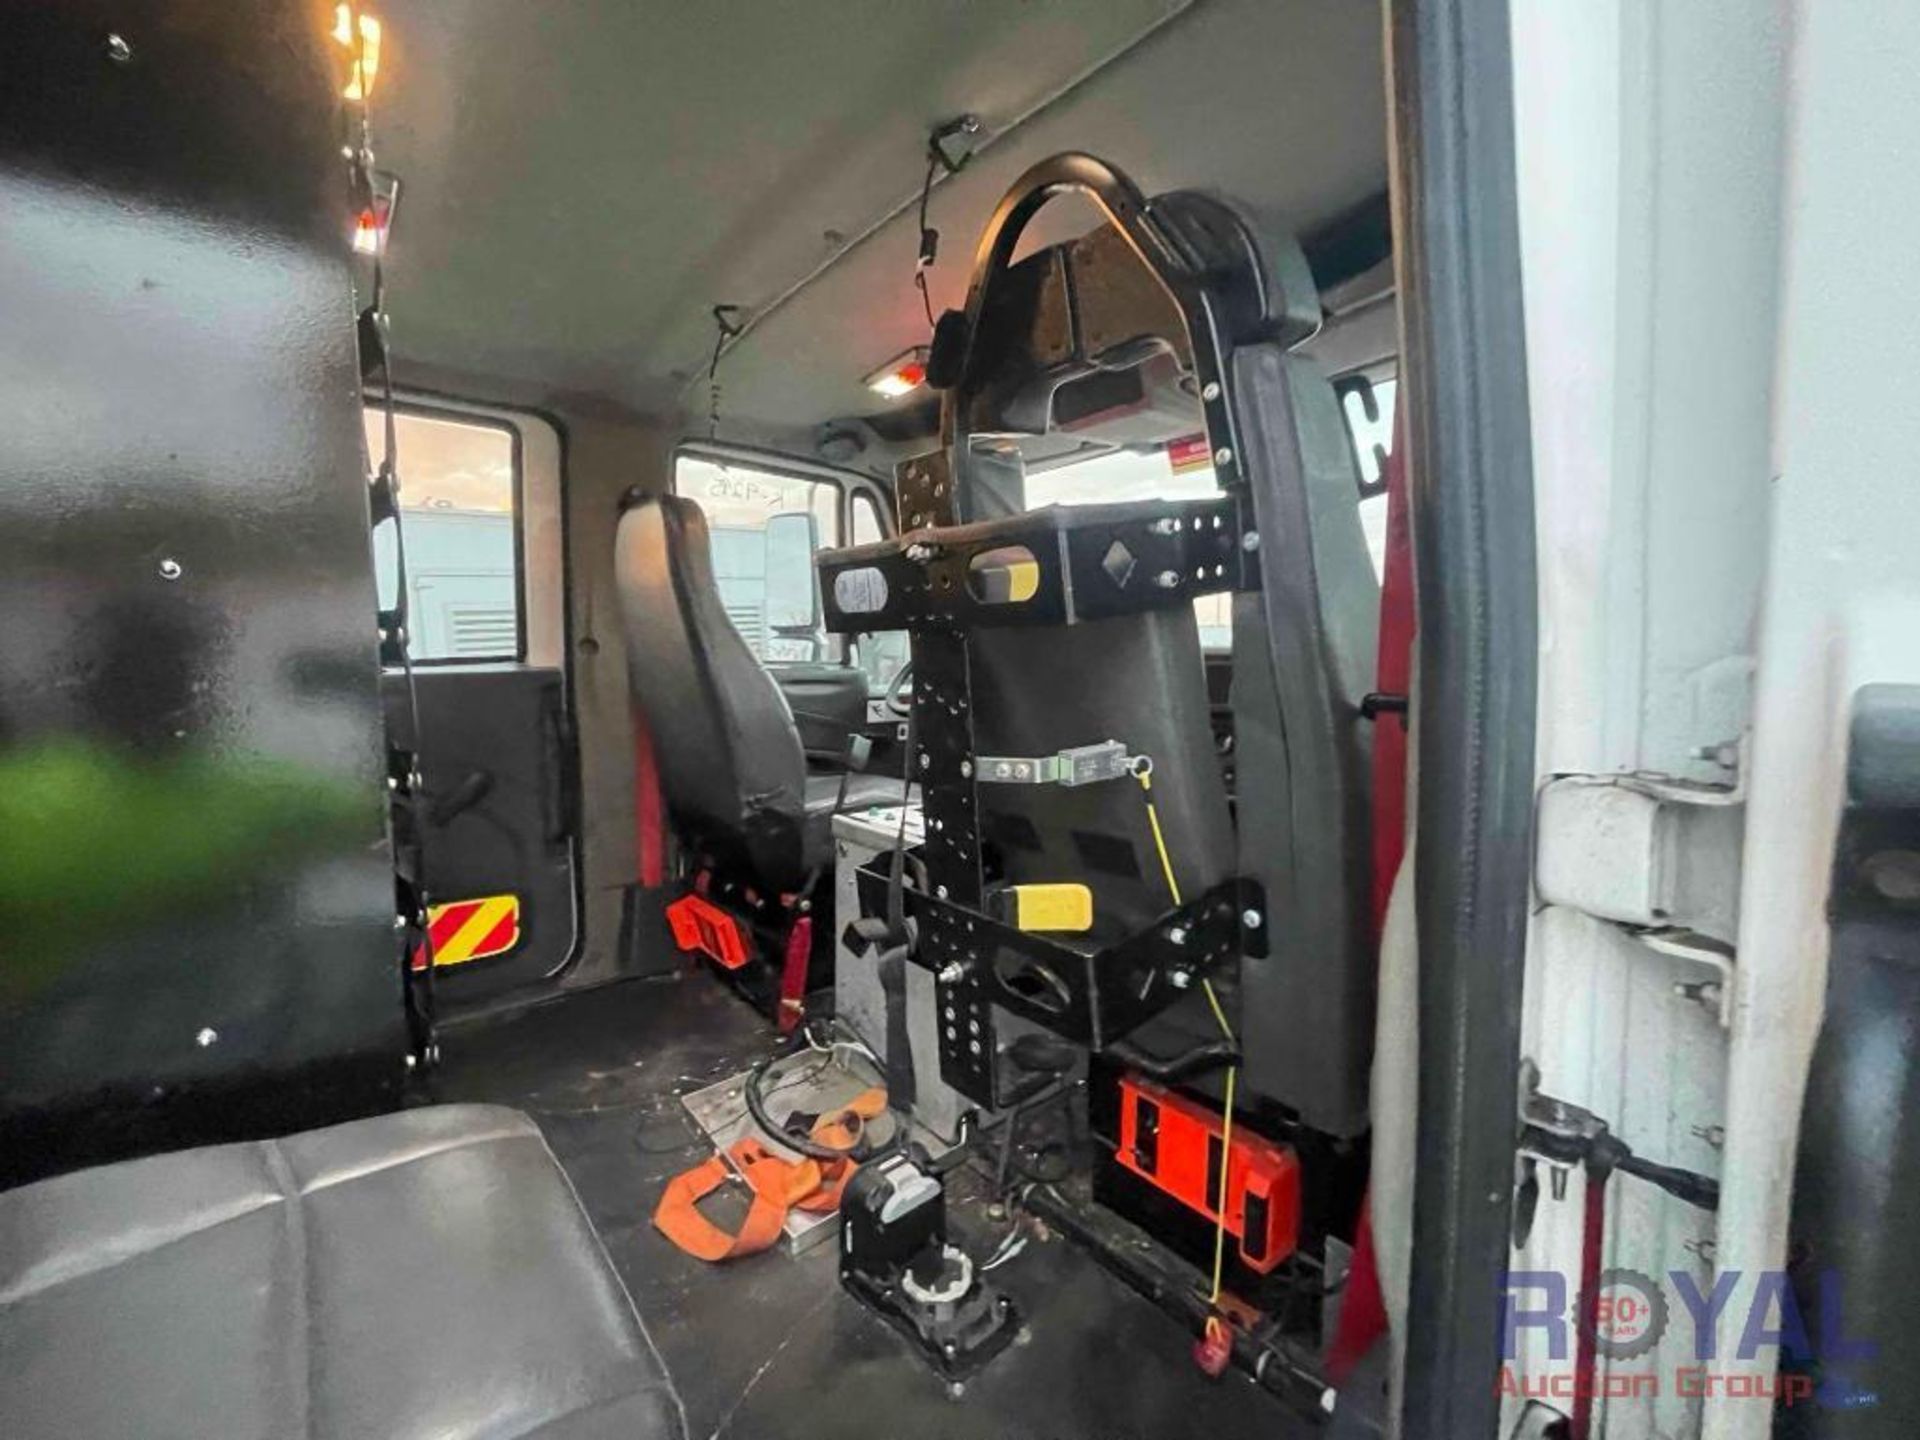 2011 International Workstar 7400 4x4 Fire Apparatus 700 Gallon Pumper Fire Truck - Image 34 of 42